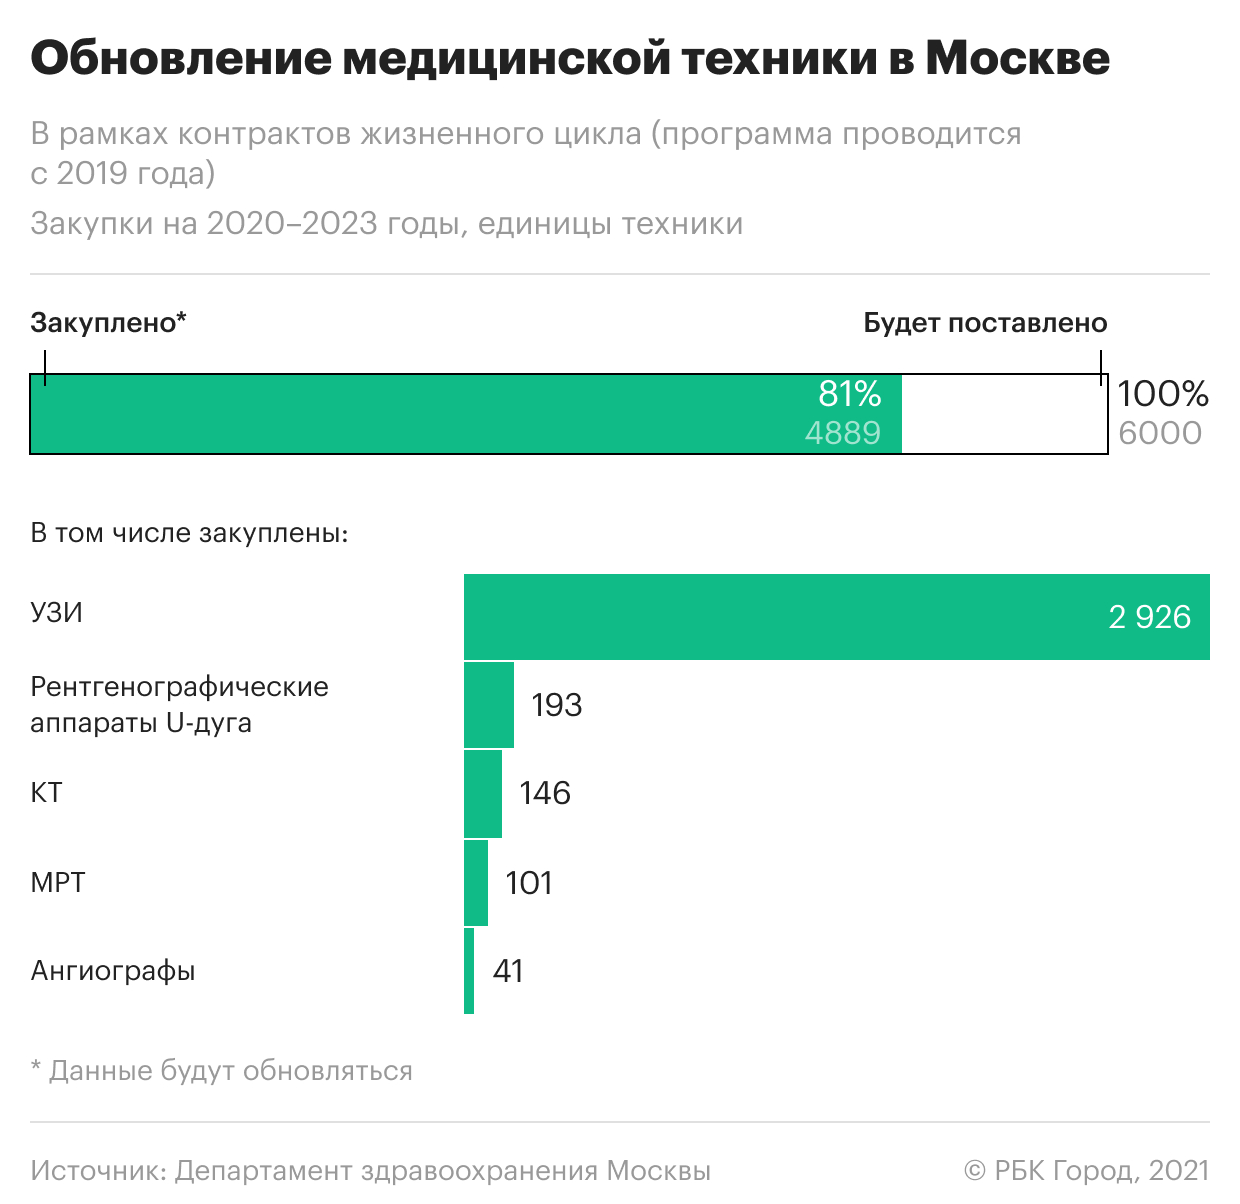 Москва начала менять парк «тяжелой» медтехники, его обновят почти на 90%